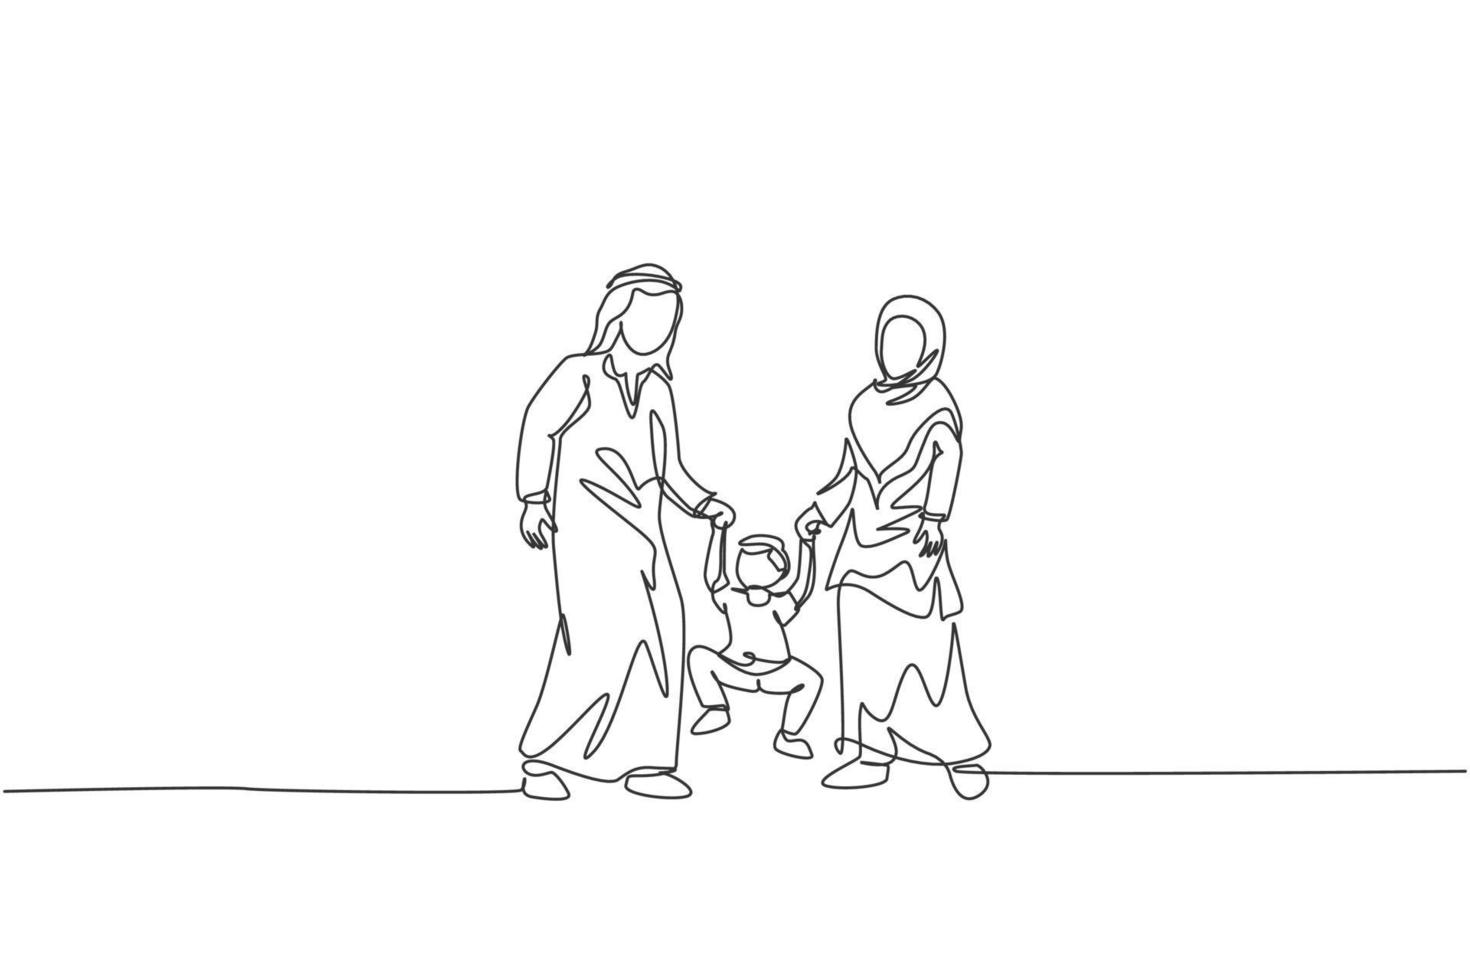 Eine einzige Strichzeichnung der jungen islamischen Mutter und Tochter, die die Hand ihres Sohnes zusammen spielen und heben, Vektorgrafik. glückliches arabisches familienerziehungskonzept. Design mit durchgehender Linienzeichnung vektor